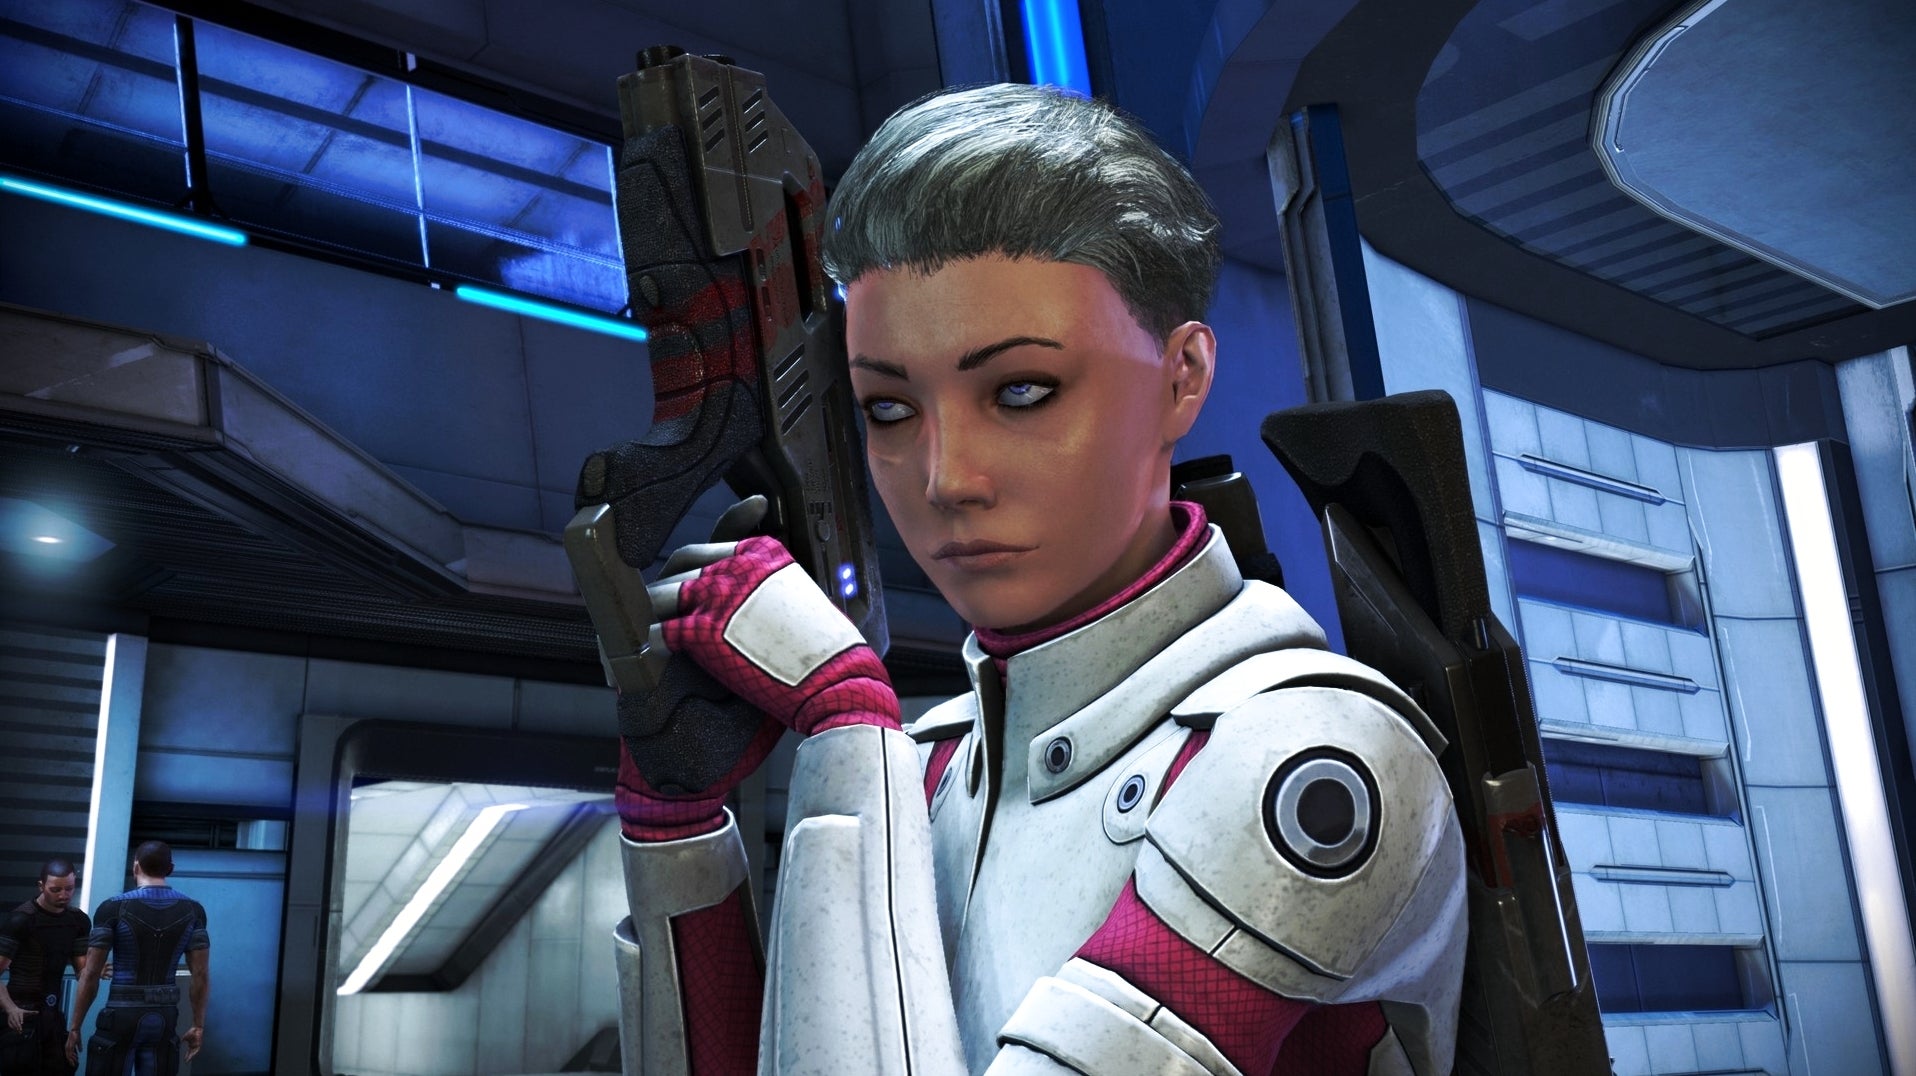 Bilder zu Mass Effect: Citadel: Familienangelegenheiten, Eine Wanze platzieren, Spontane Überprüfung